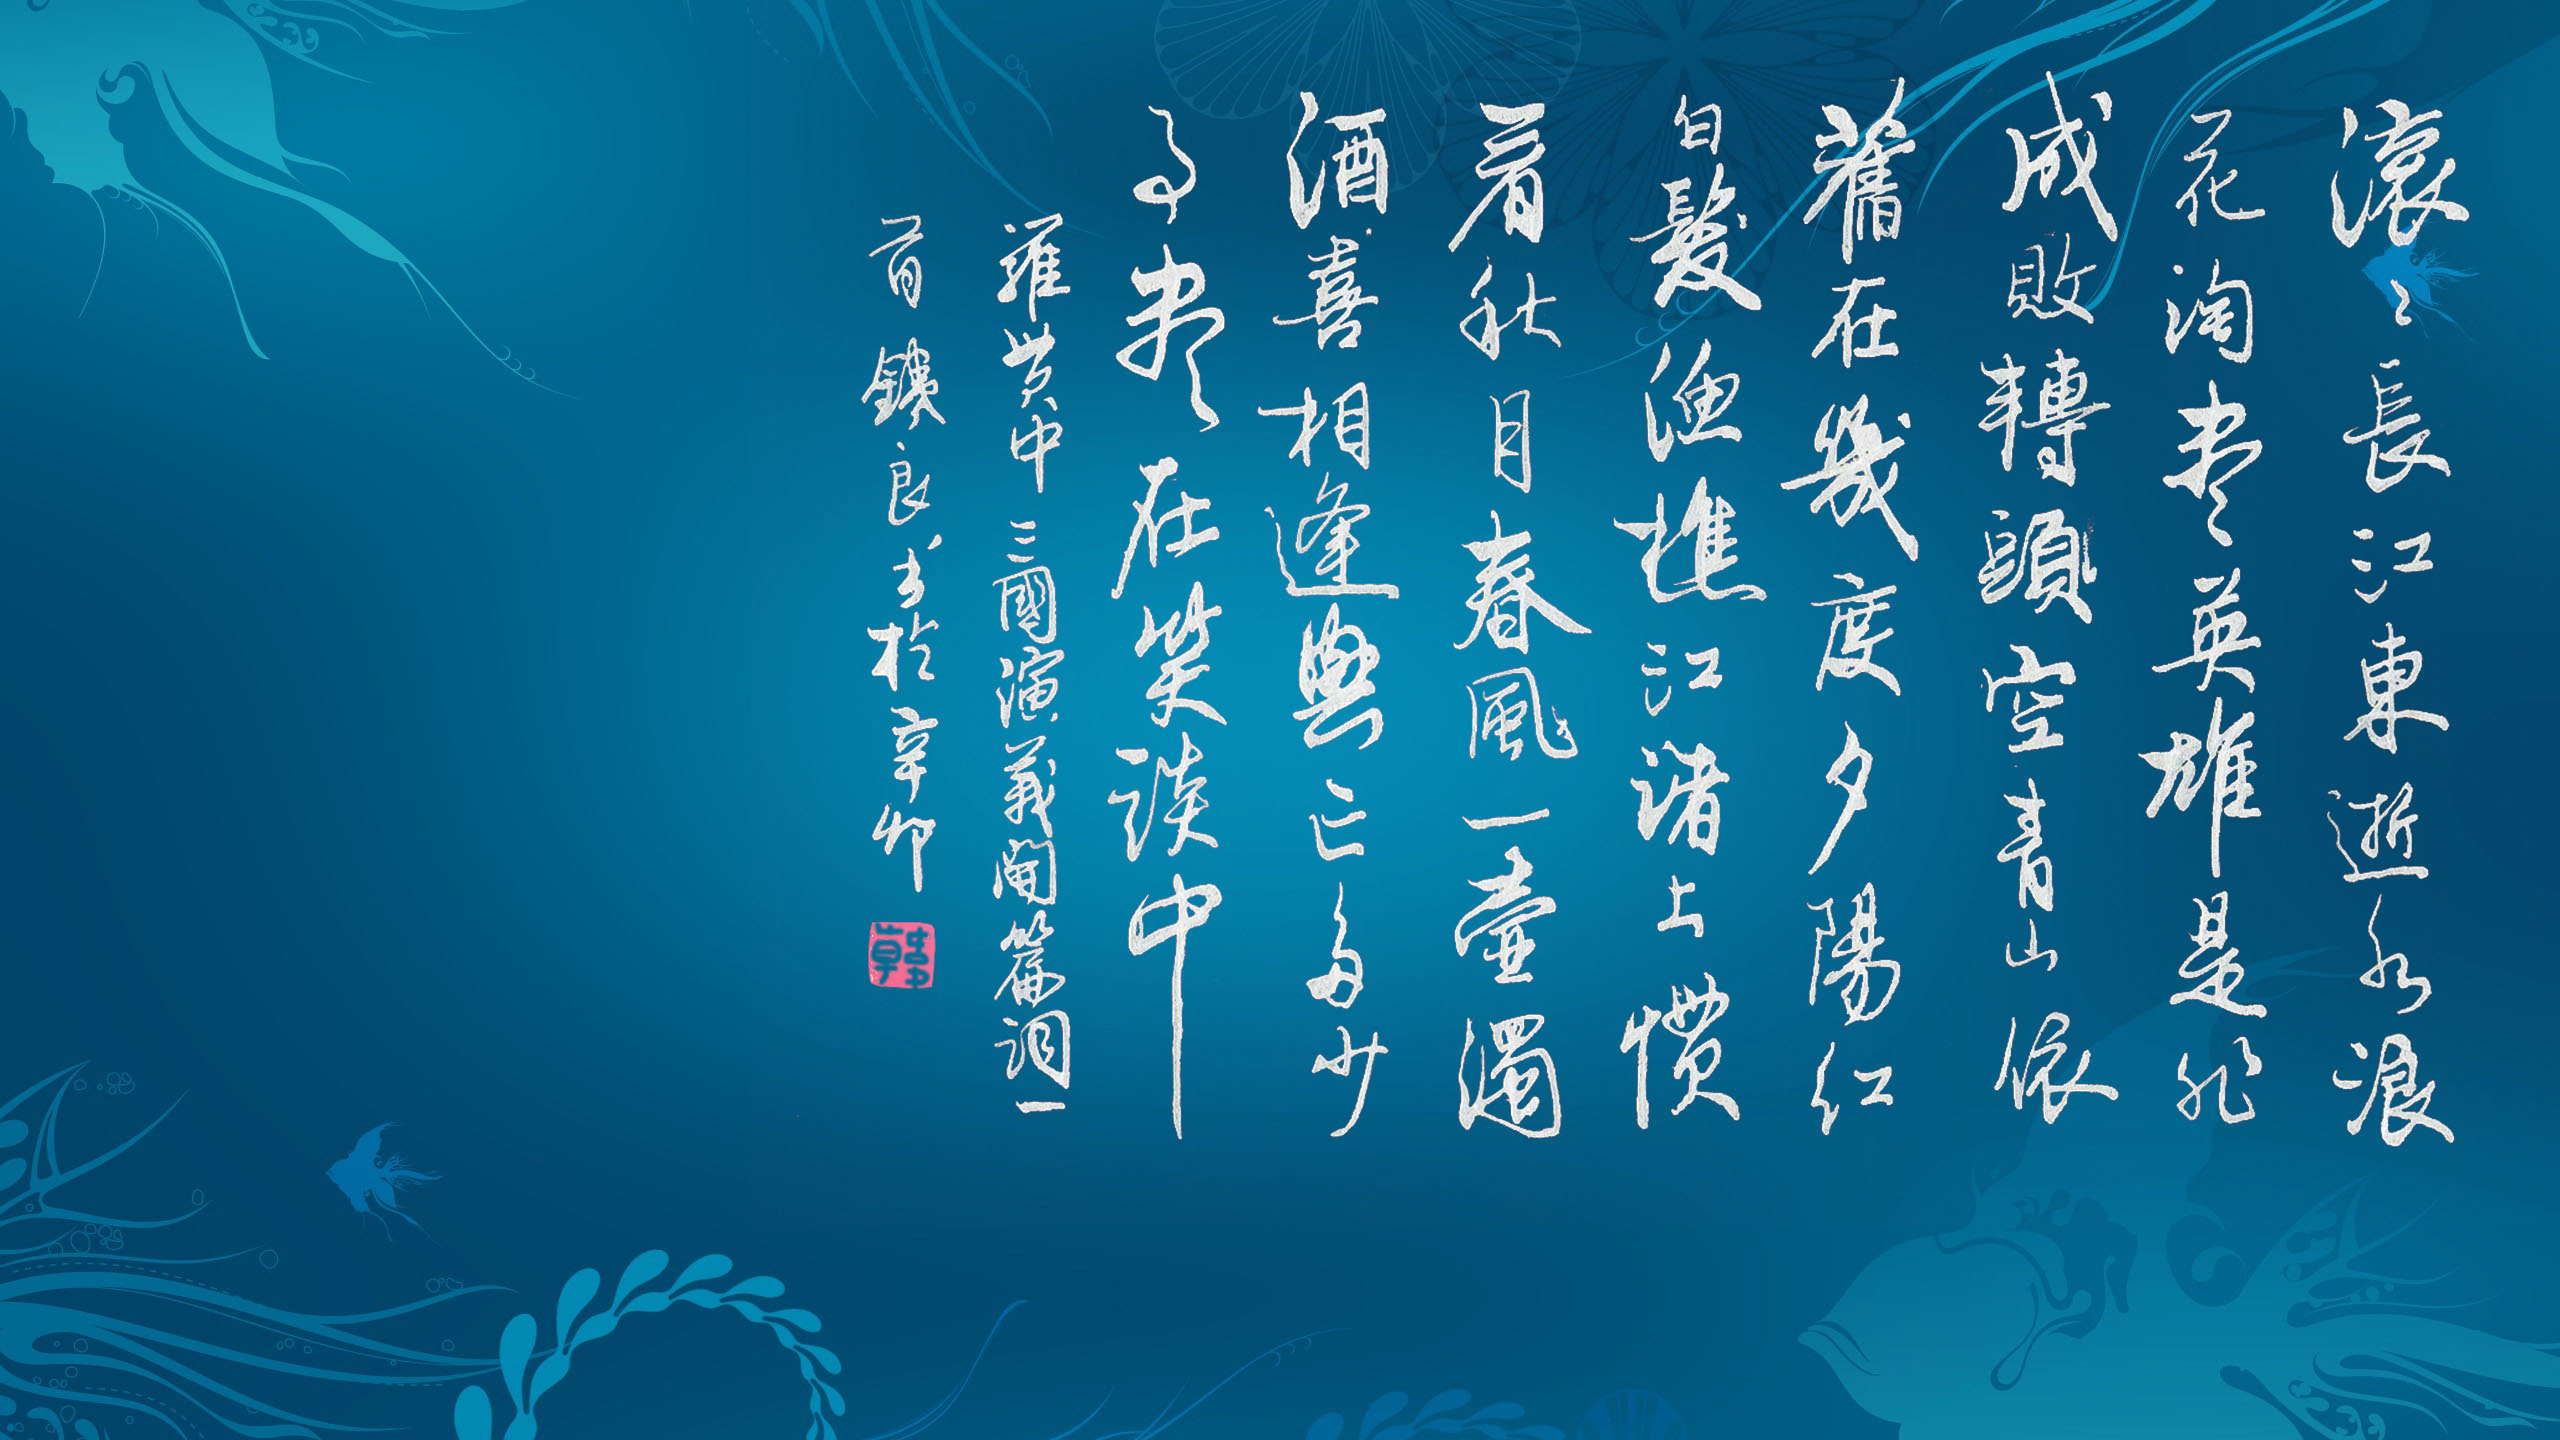 春节的由来、习俗和相关诗词